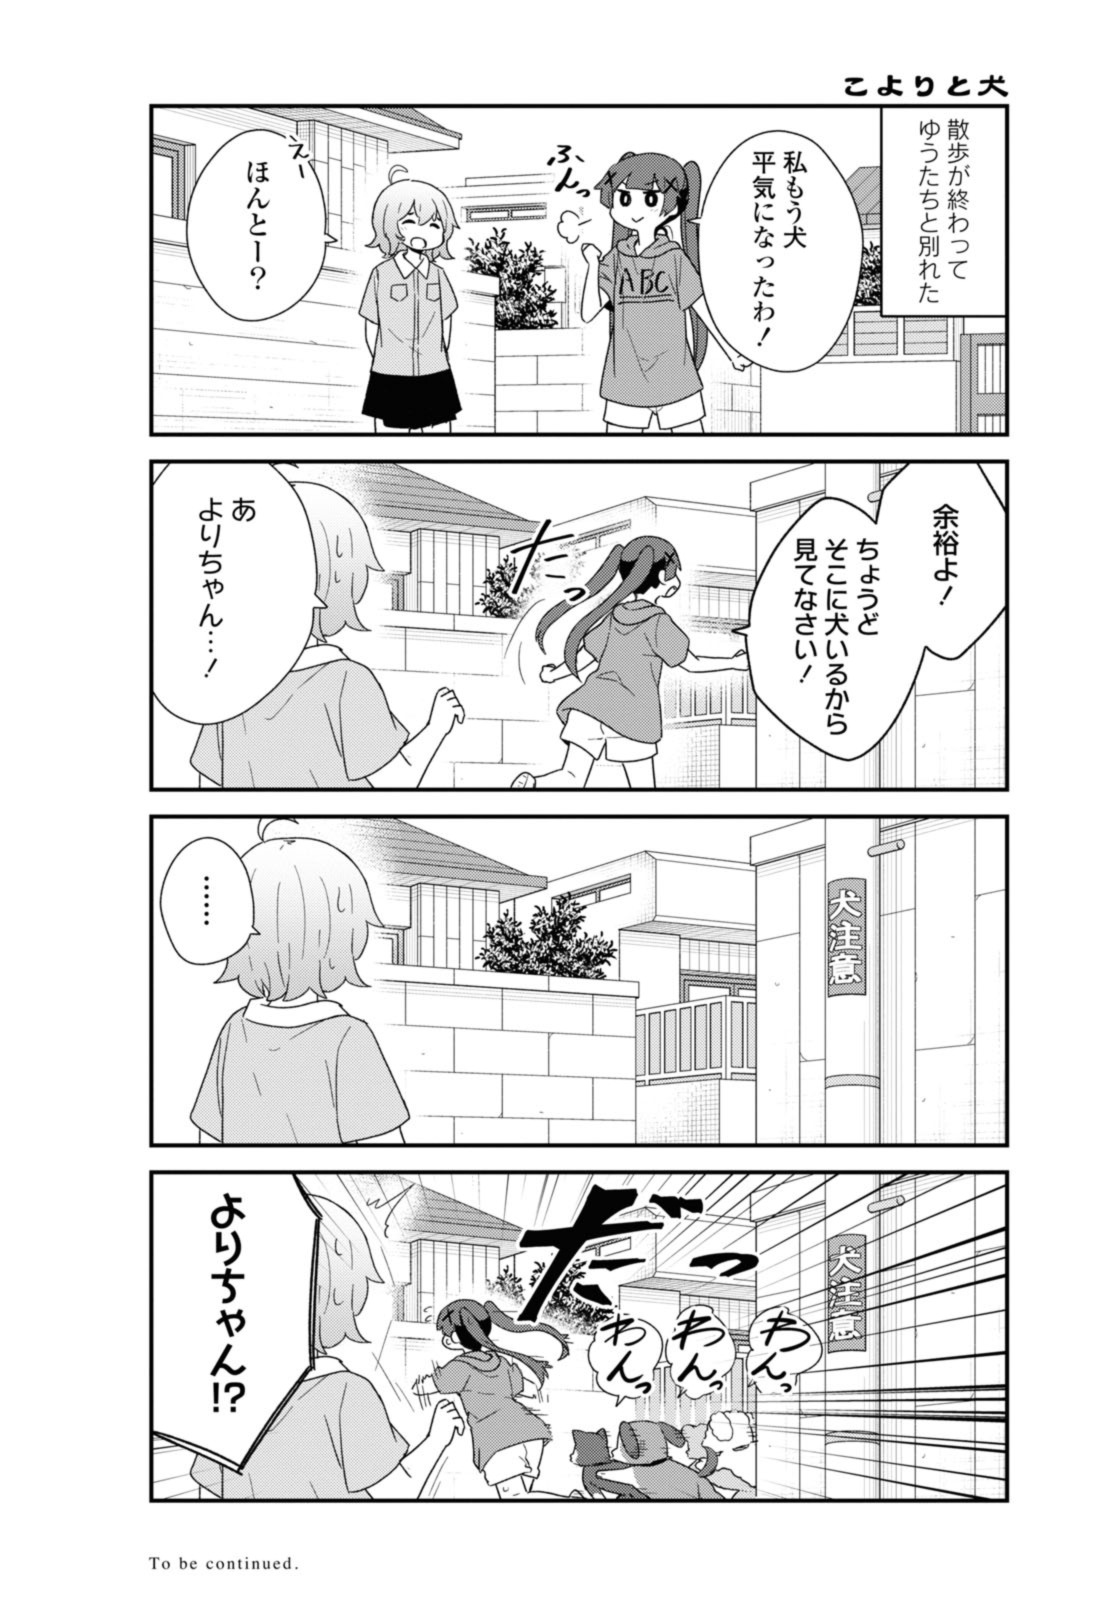 Watashi ni Tenshi ga Maiorita! - Chapter 103 - Page 13